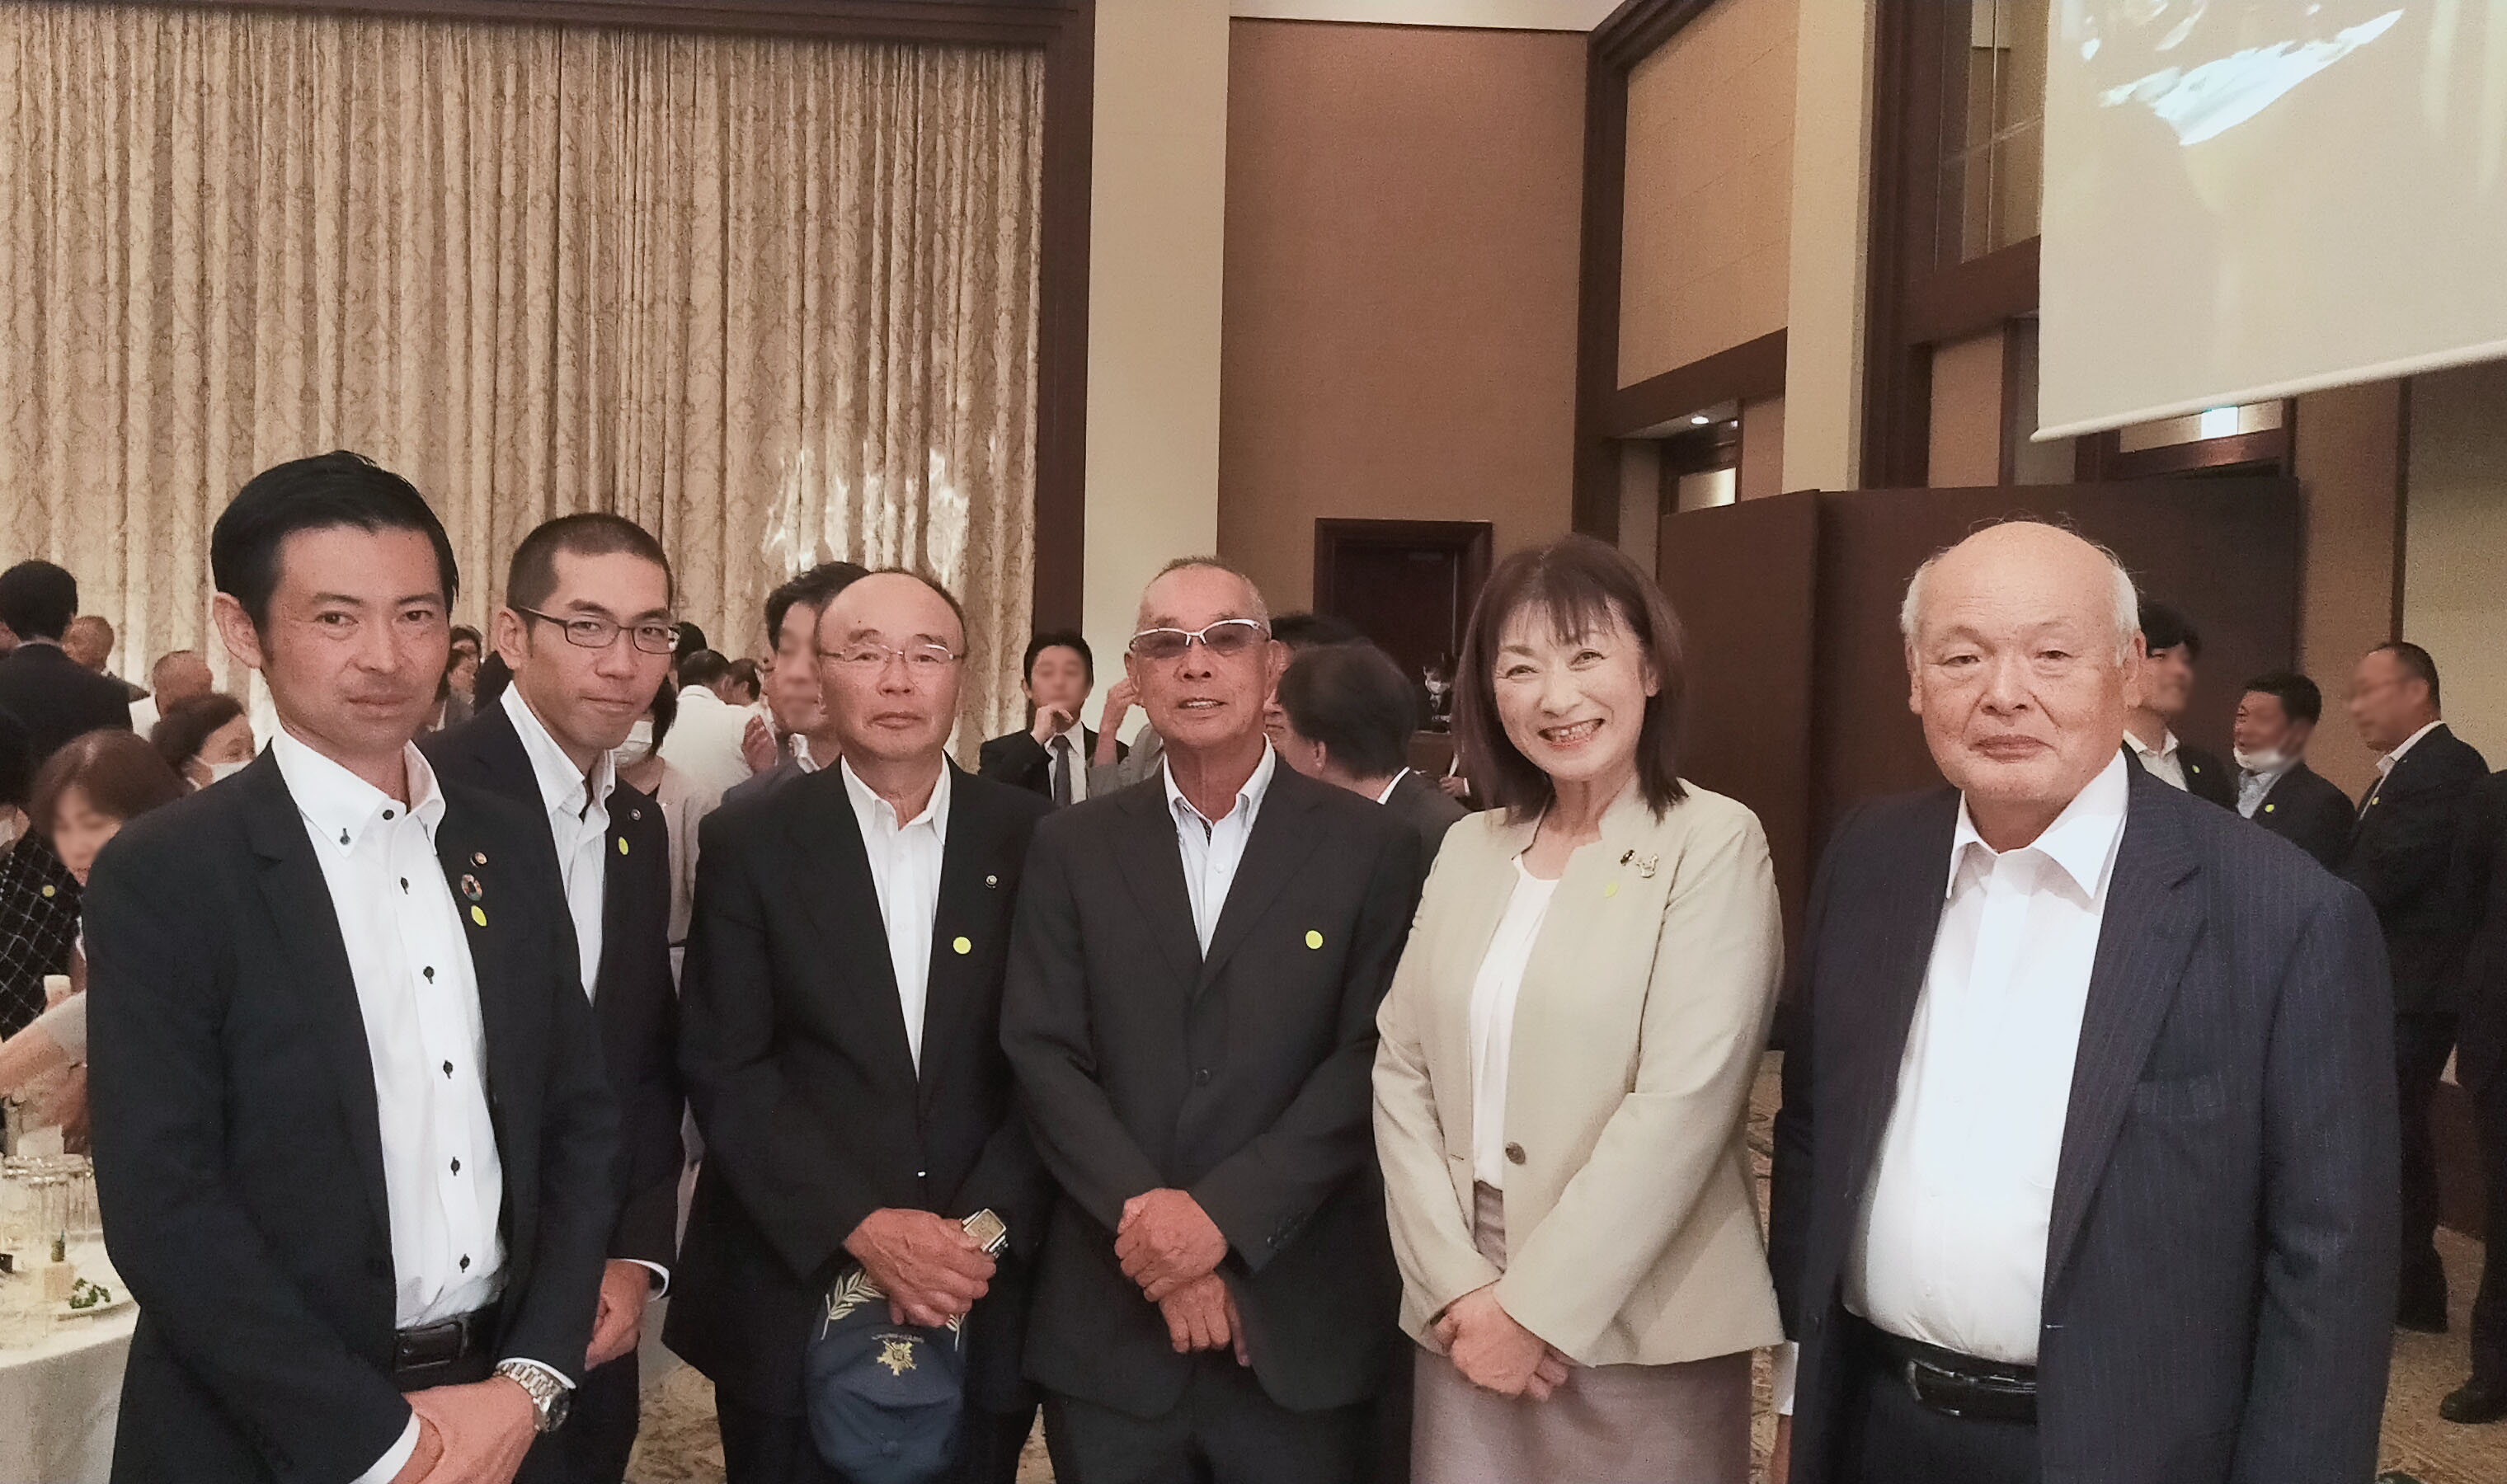 写真:大井川和彦知事を激励する会にて 安藤真理子土浦市長にお会いしました。の写真